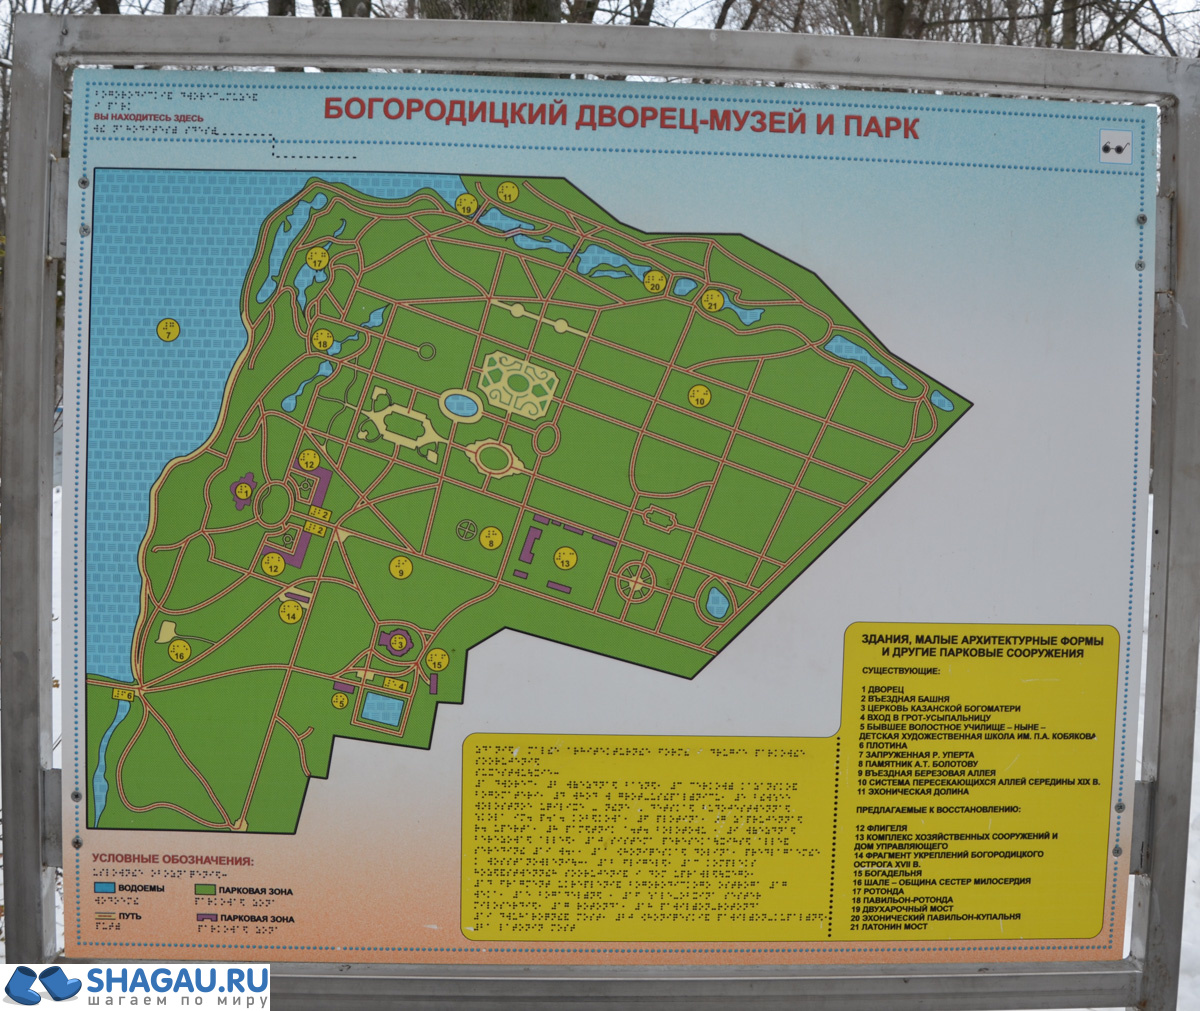 Карта парка в Богородицком